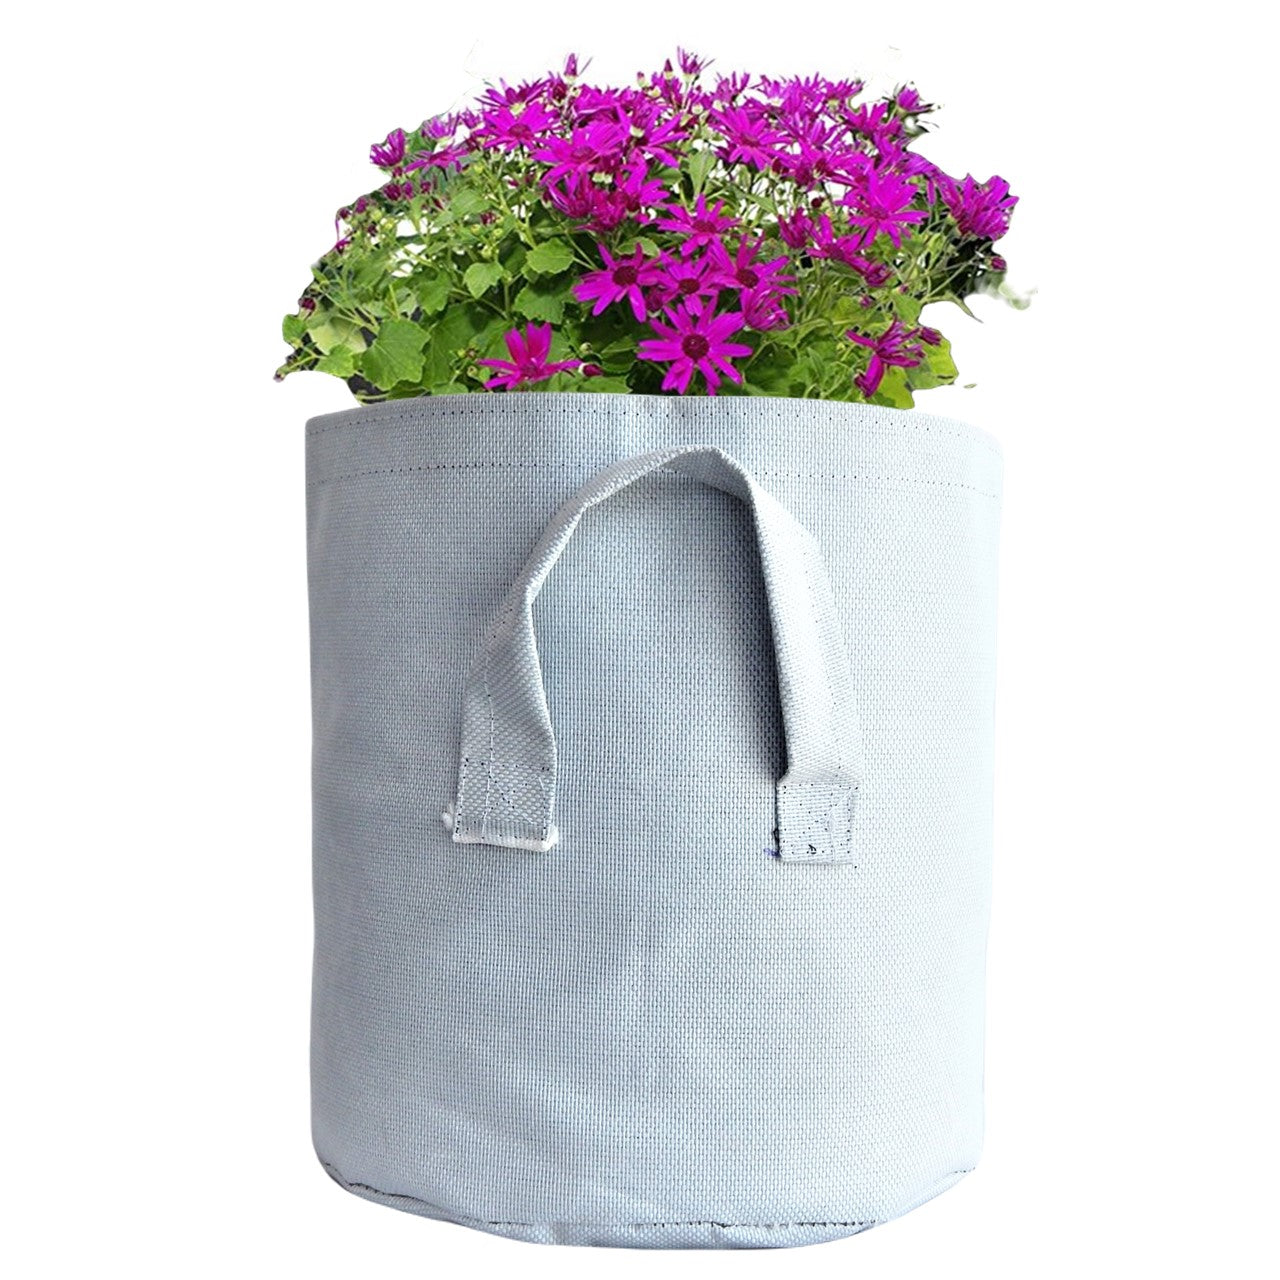 ecofynd Non Woven Fabric Pots Grow Bags Plant Bag freeshipping - Ecofynd